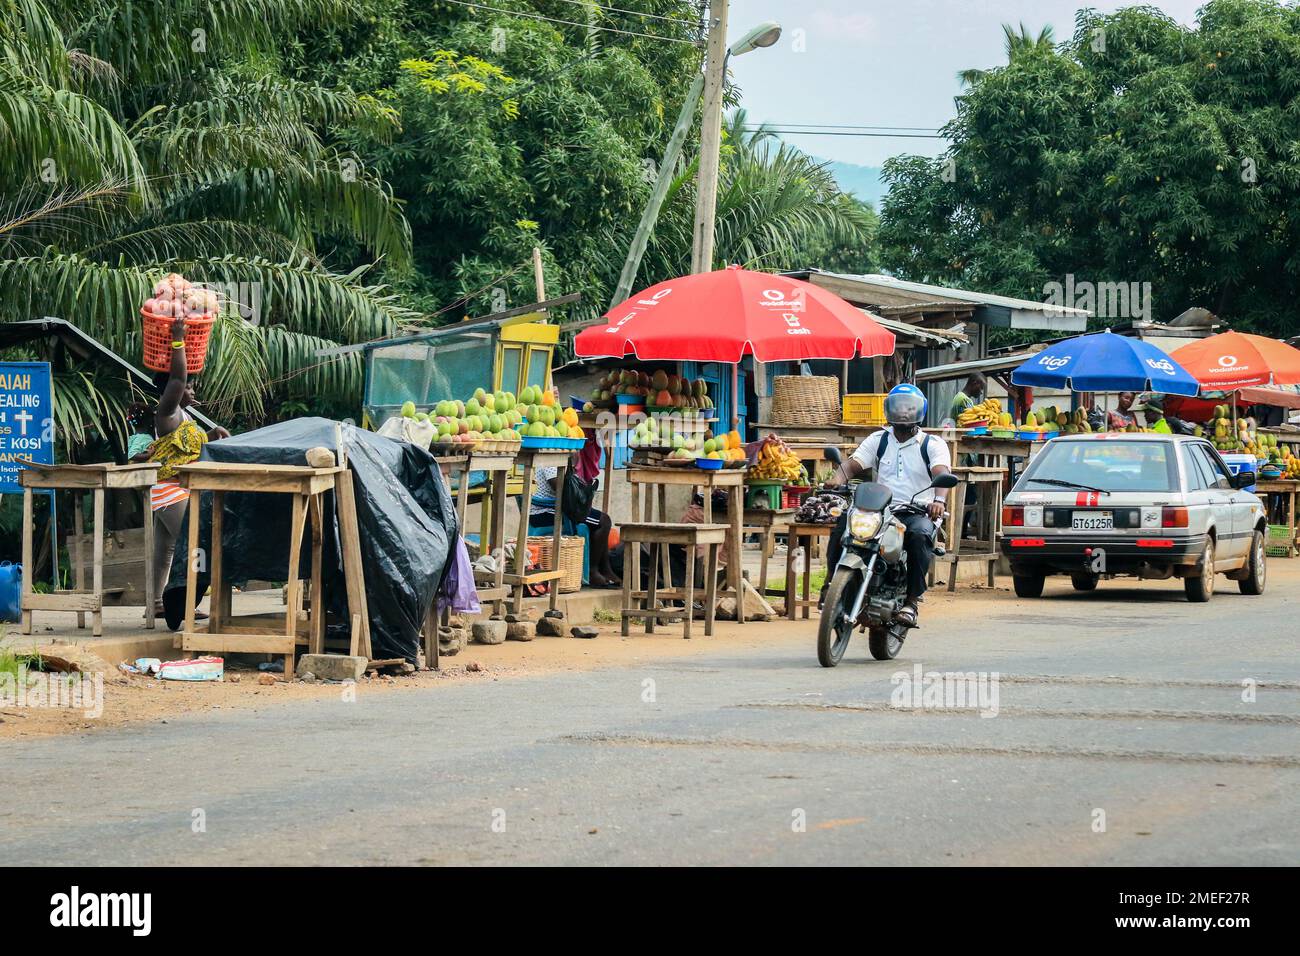 Les habitants africains locaux du Ghana marchent vers les activités quotidiennes dans les rues d'Accra Banque D'Images